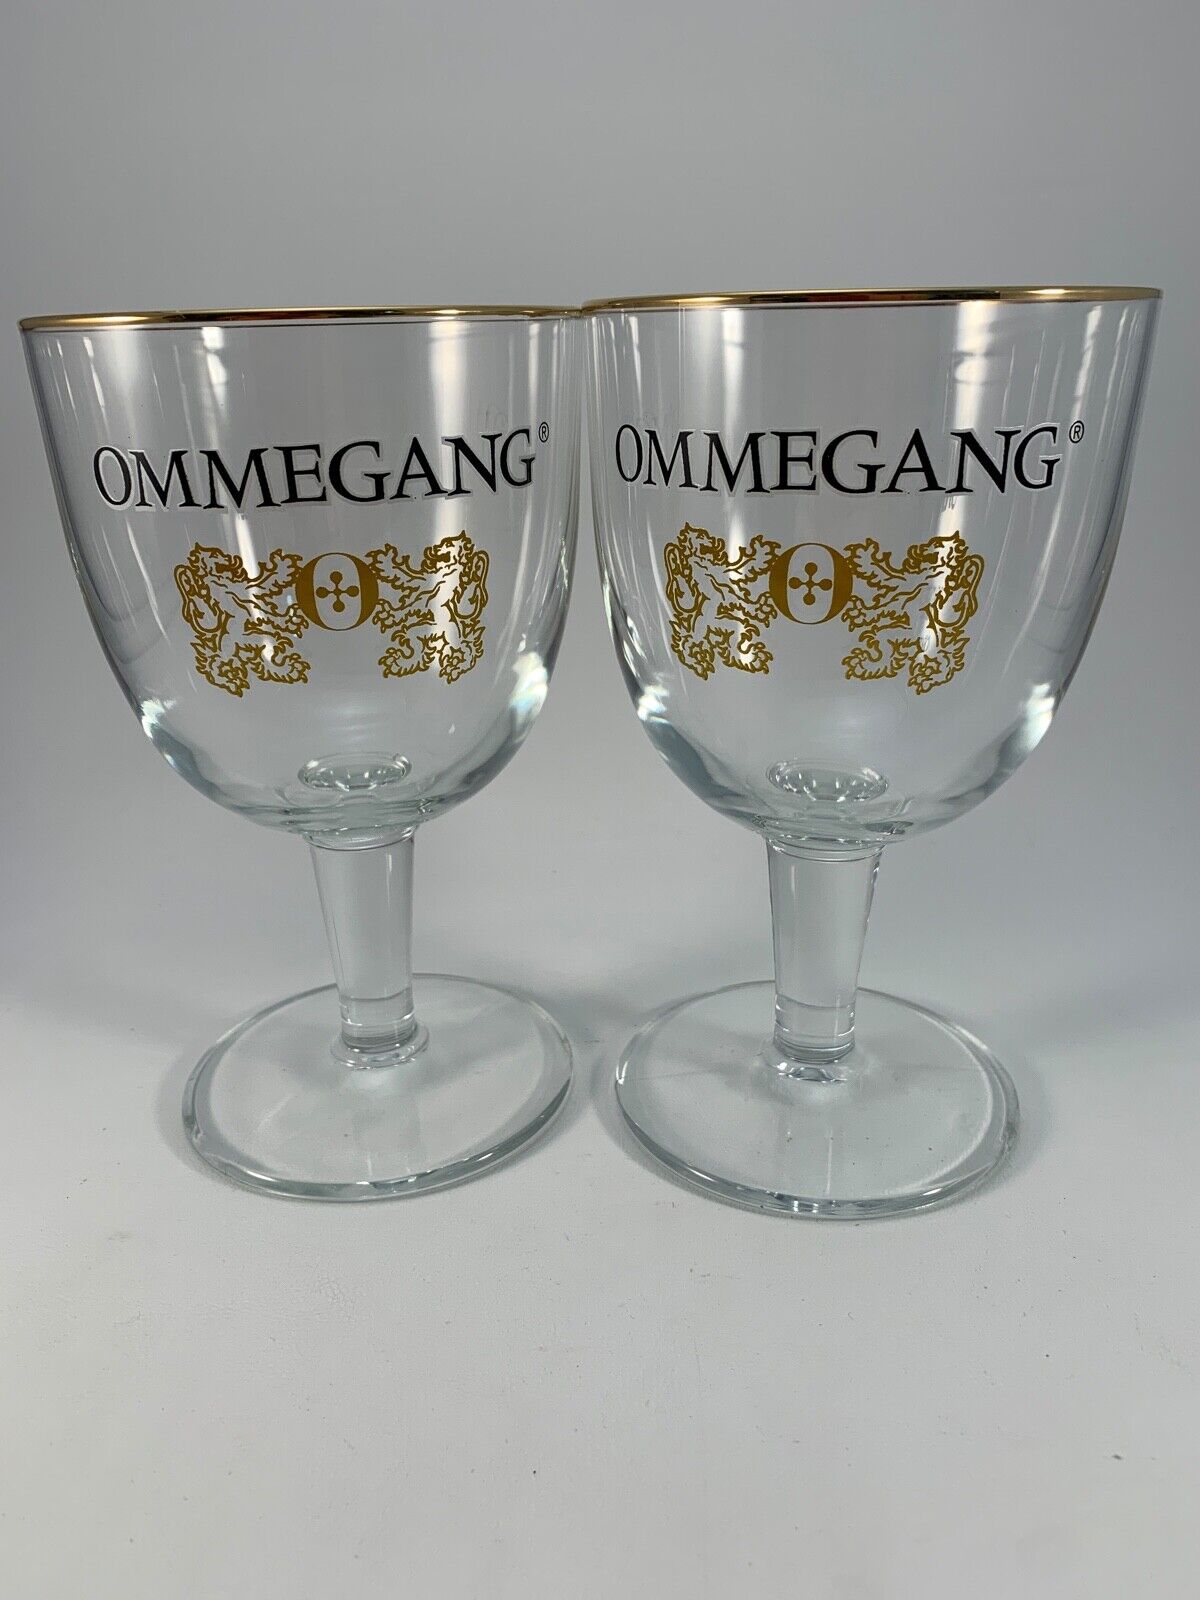 OMMEGANG Beer Glass Goblets - Lion Crest - Gold Trim - Set of 2